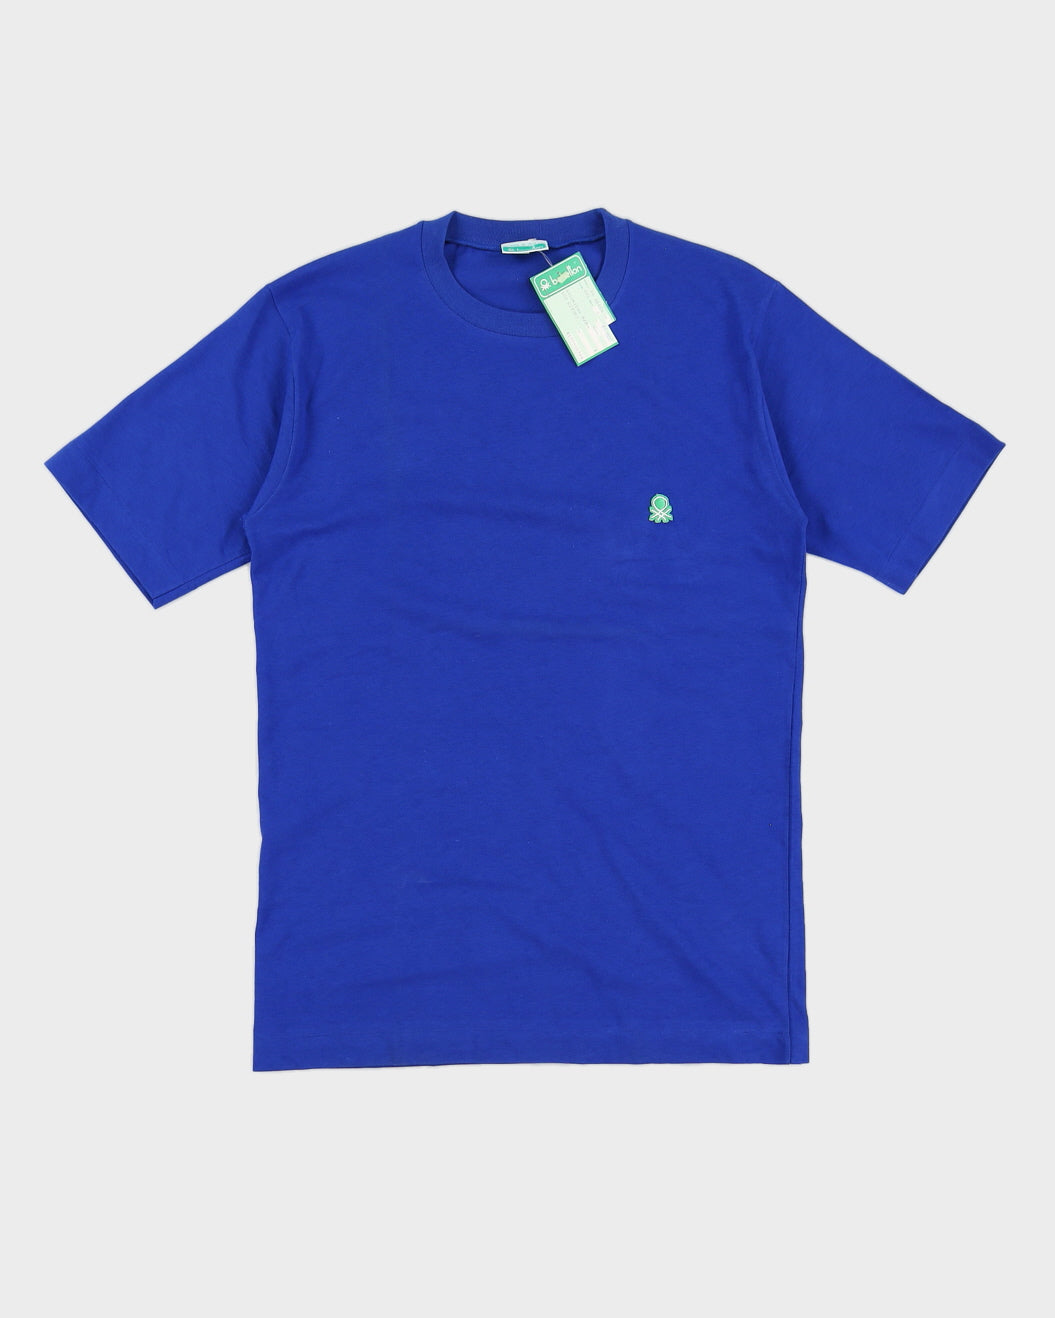 Vintage 70s Benetton Plain Blue T-Shirt - S